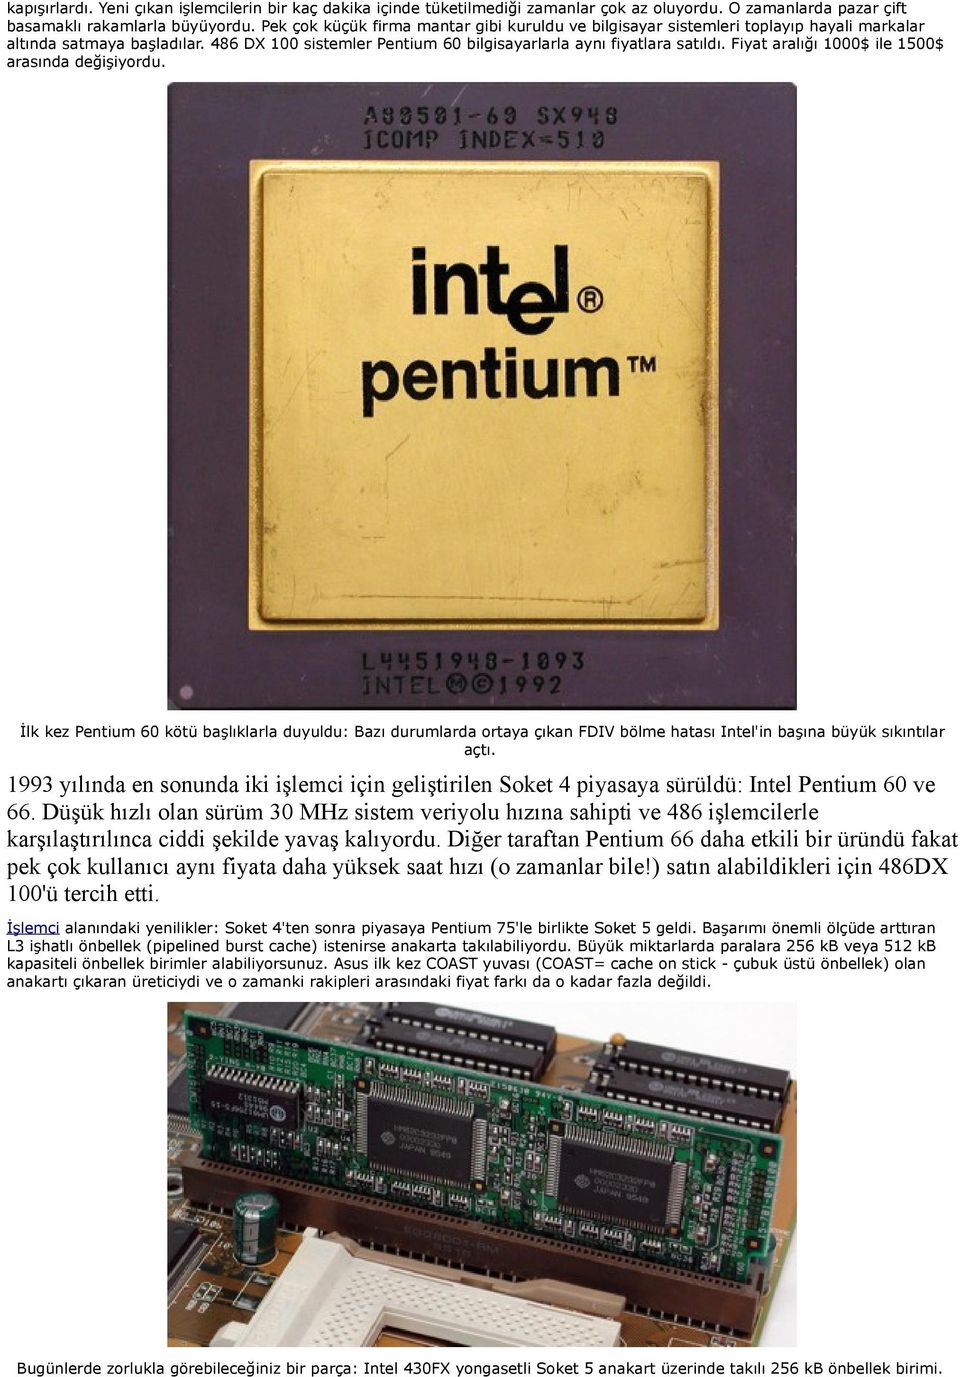 Fiyat aralığı 1000$ ile 1500$ arasında değişiyordu. İlk kez Pentium 60 kötü başlıklarla duyuldu: Bazı durumlarda ortaya çıkan FDIV bölme hatası Intel'in başına büyük sıkıntılar açtı.